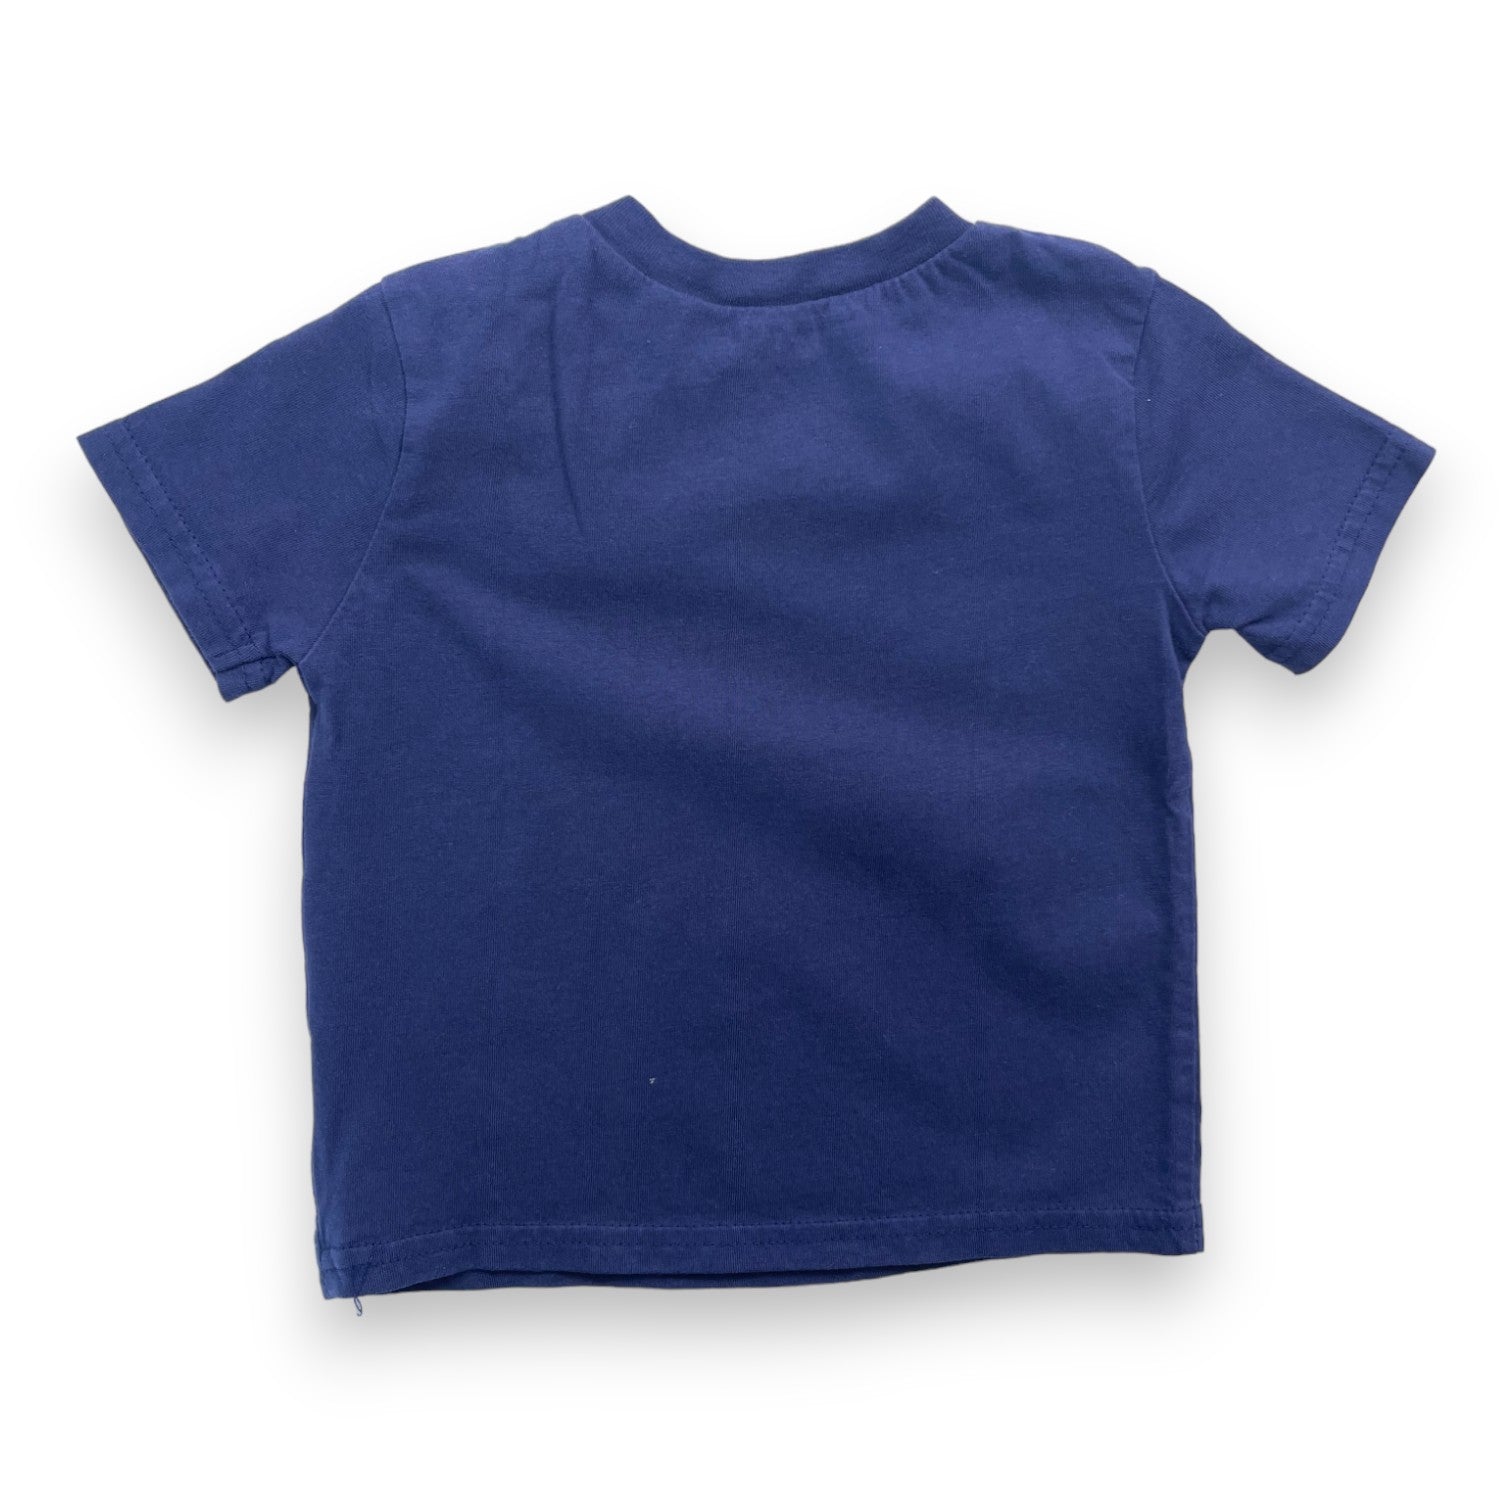 RALPH LAUREN - T shirt bleu marine logo brodé - 12 mois